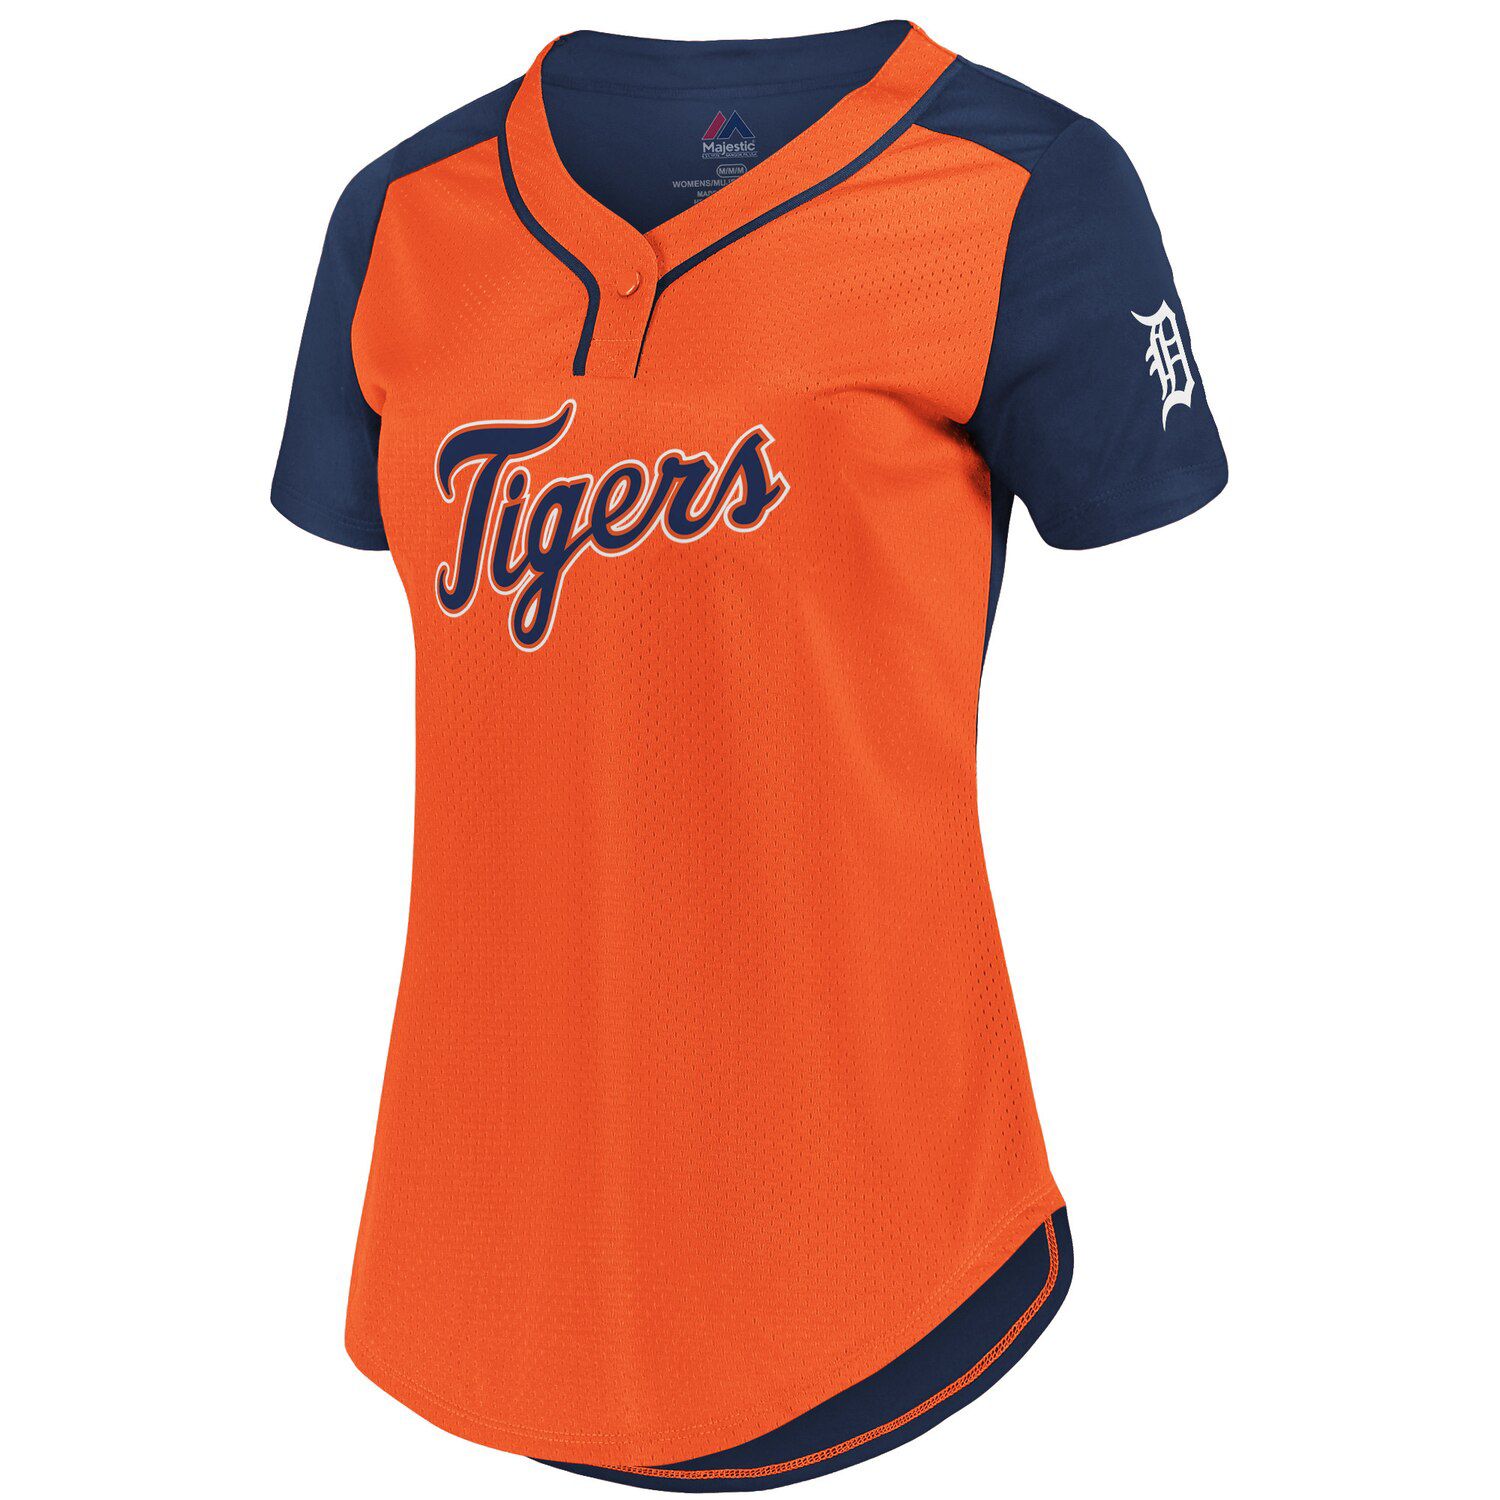 women's plus size detroit tigers shirt